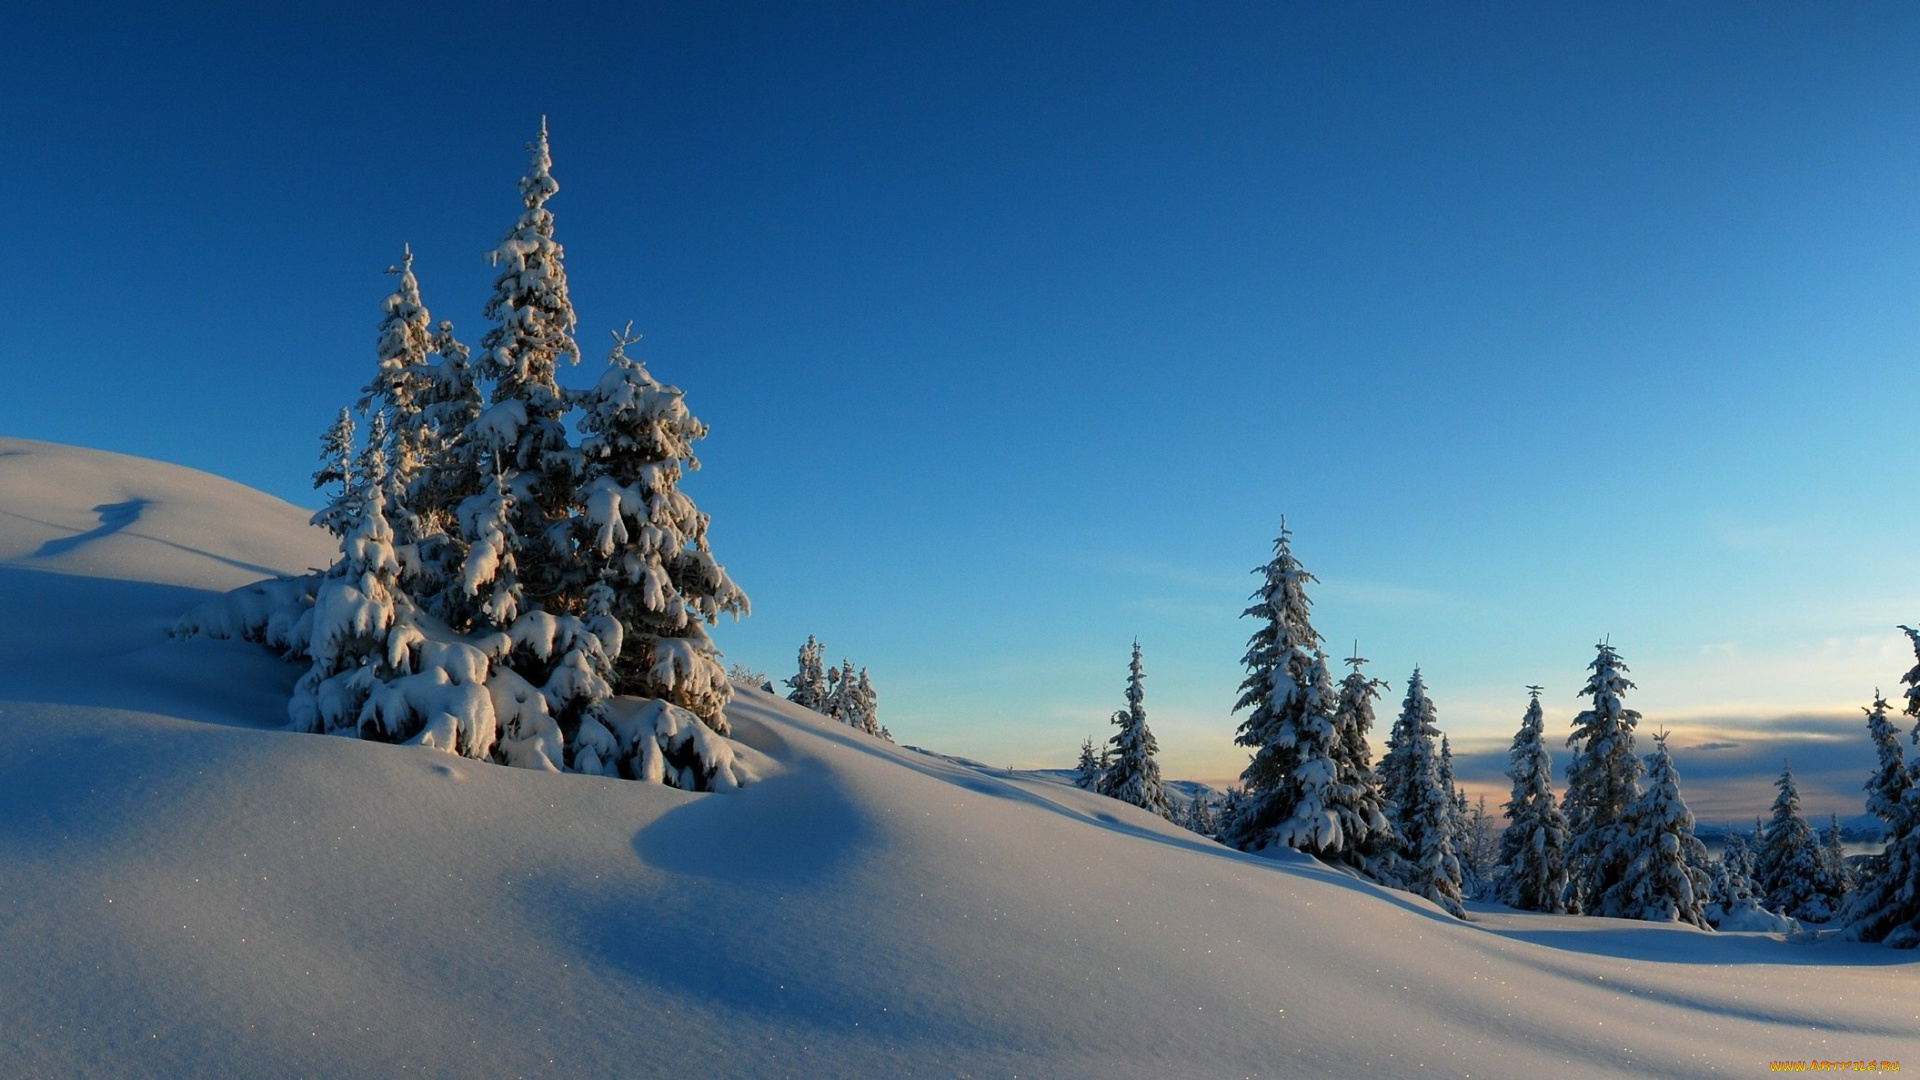 природа, зима, ель, деревья, холмы, снег, горизонт, мороз, закат, небо